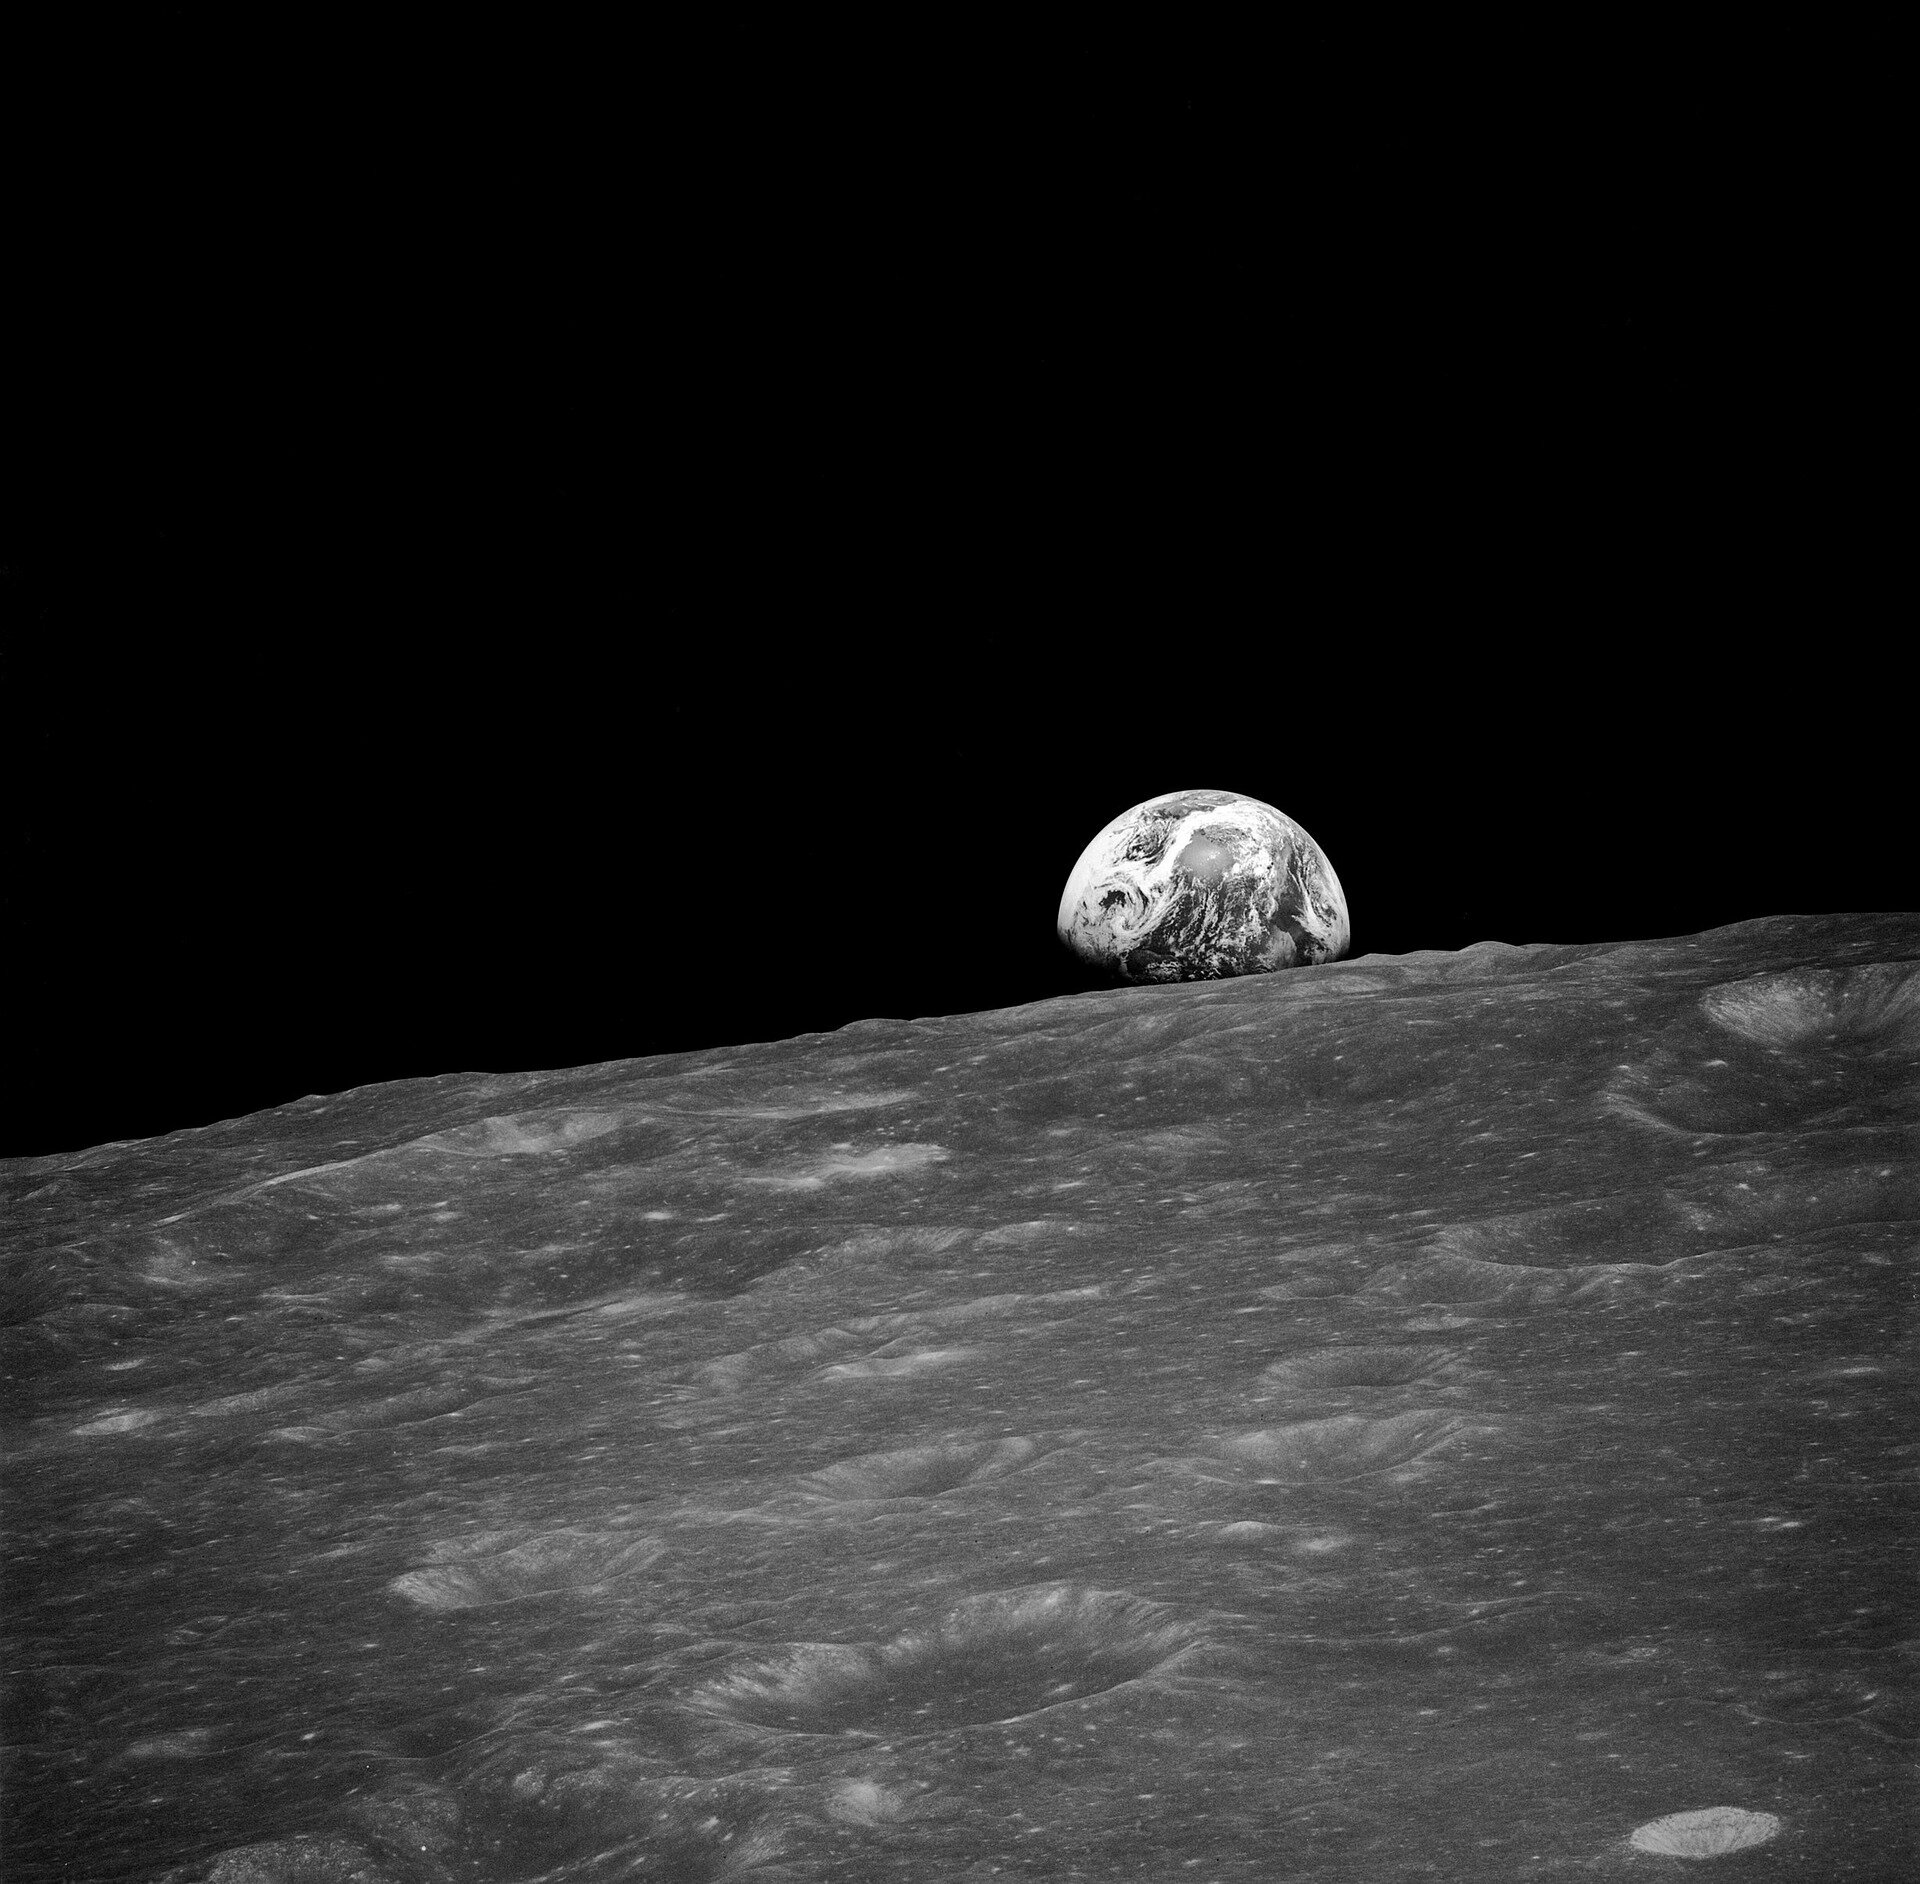 Japan Moon lander revives after lunar night